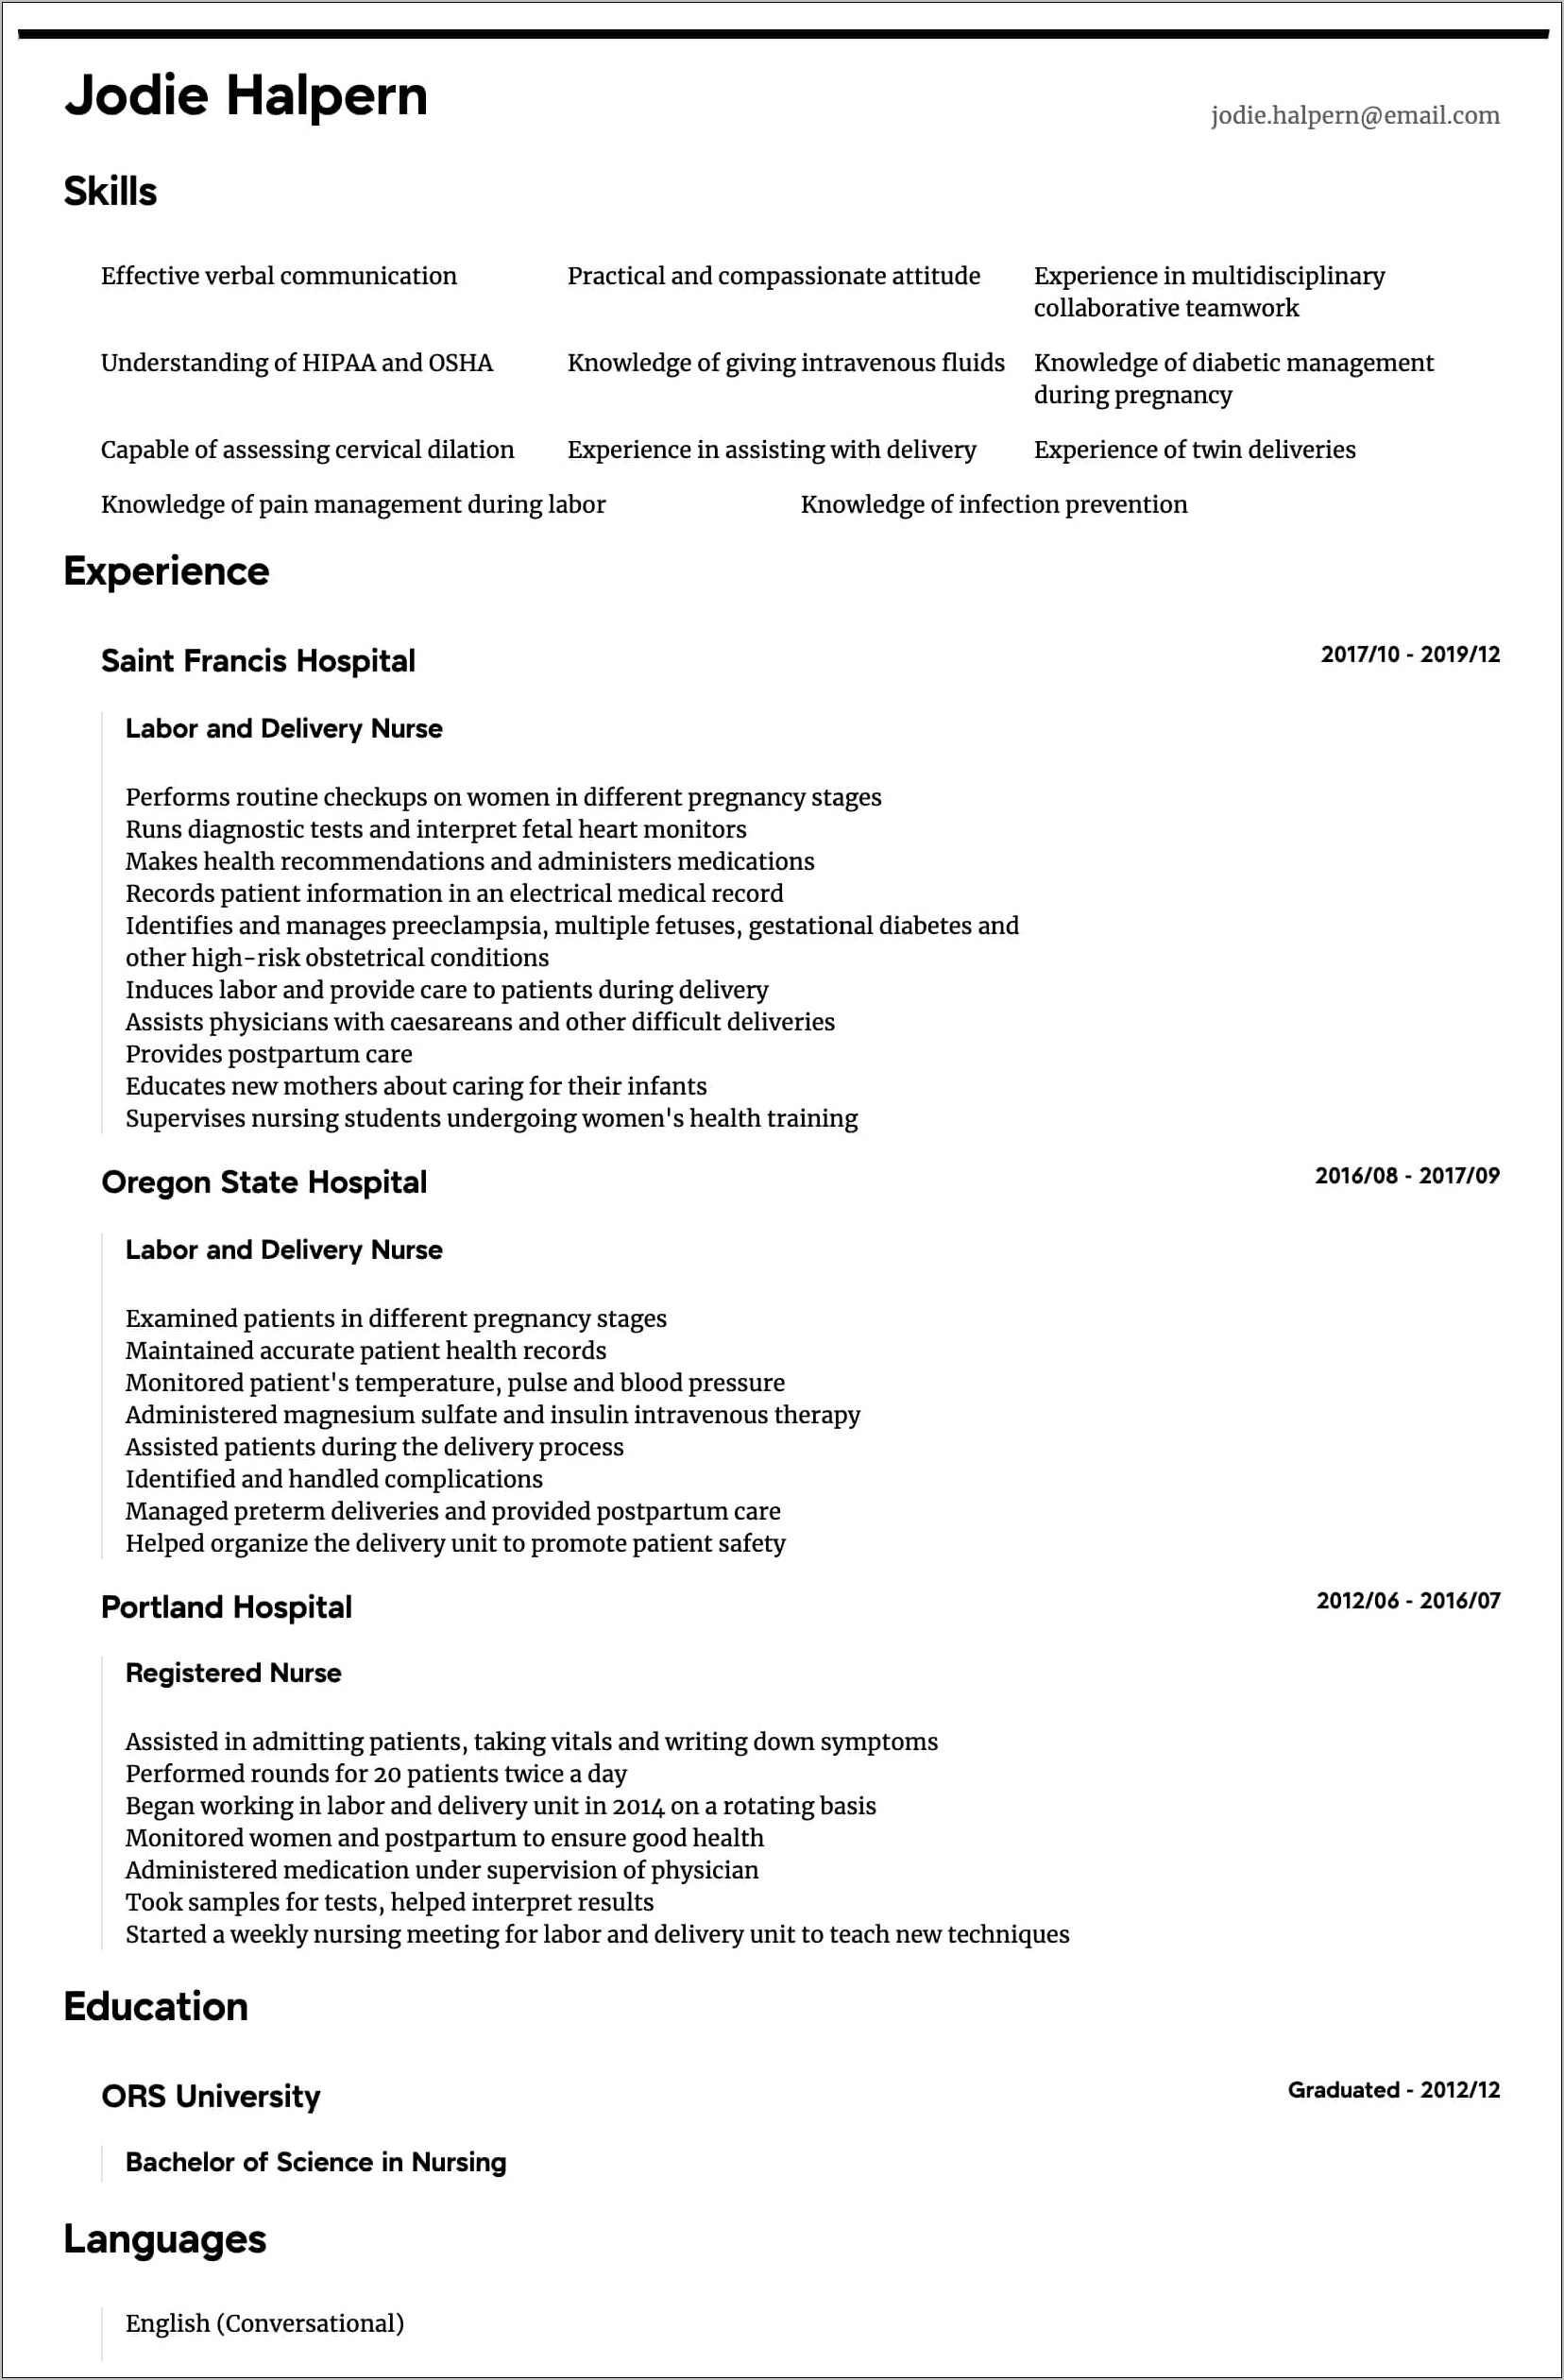 Resume Job Description For Nurses